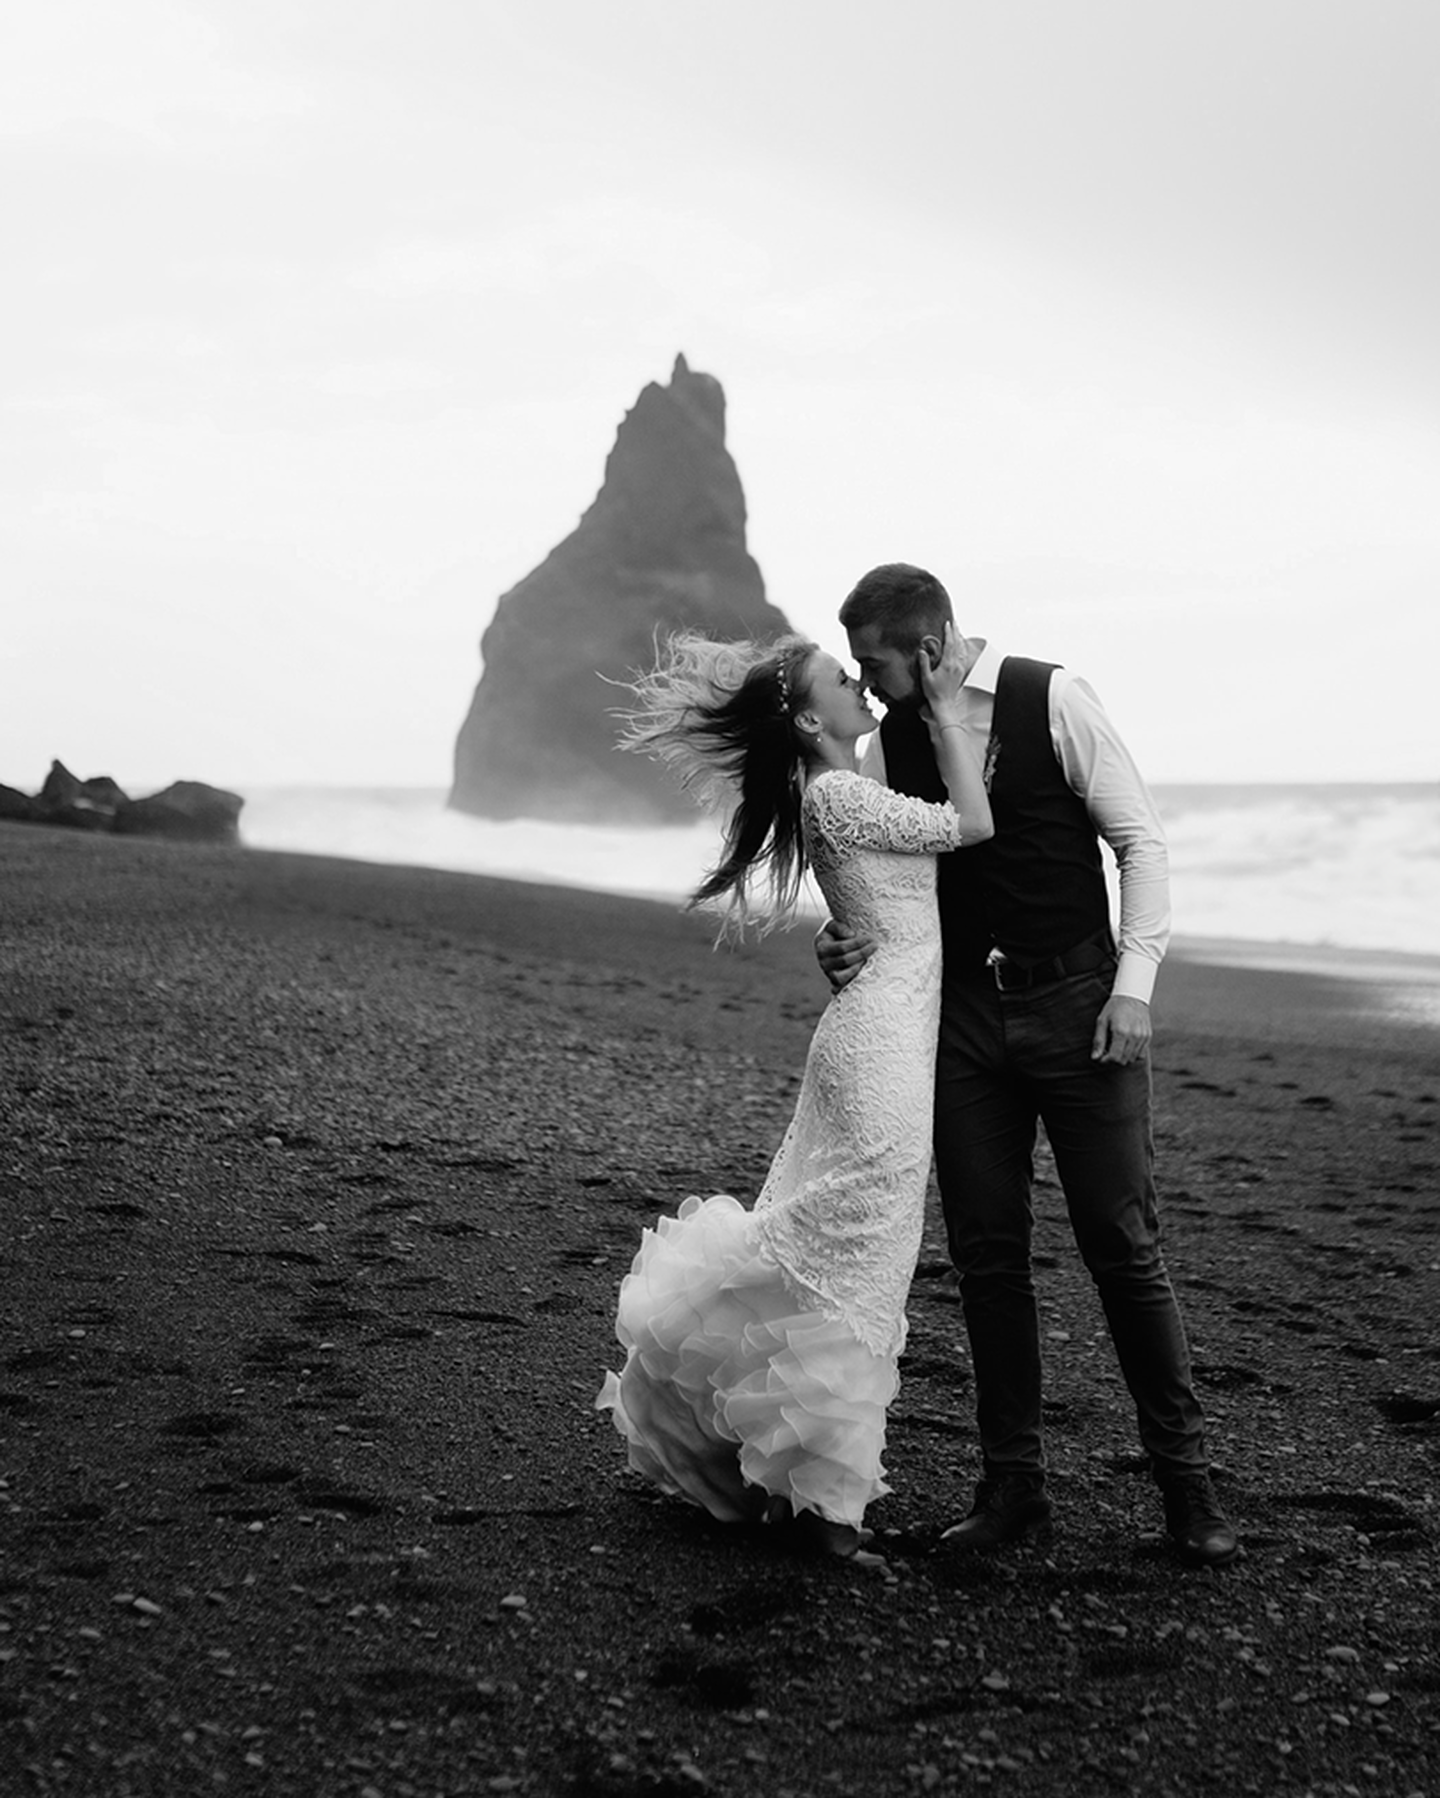 Un couple se mariant sur une plage dans un cadre romantique.